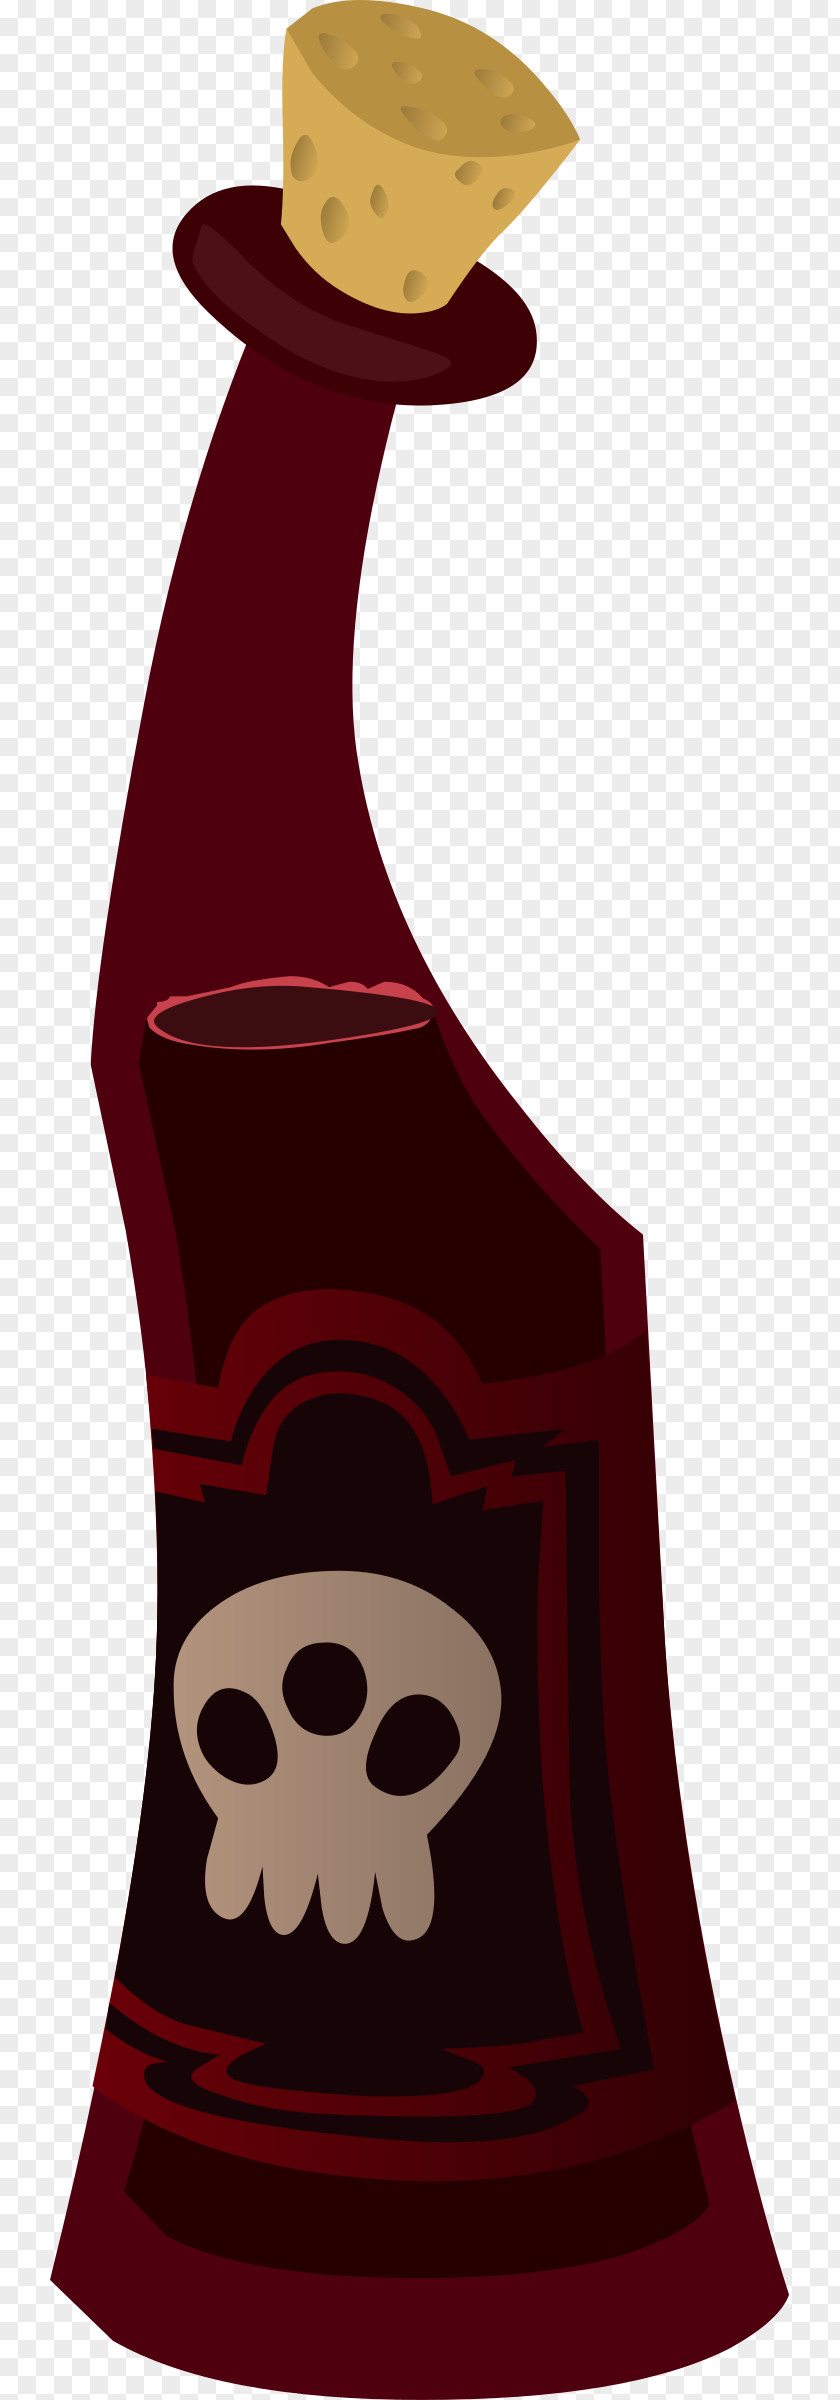 Popular Red Wine Bottle Clip Art PNG